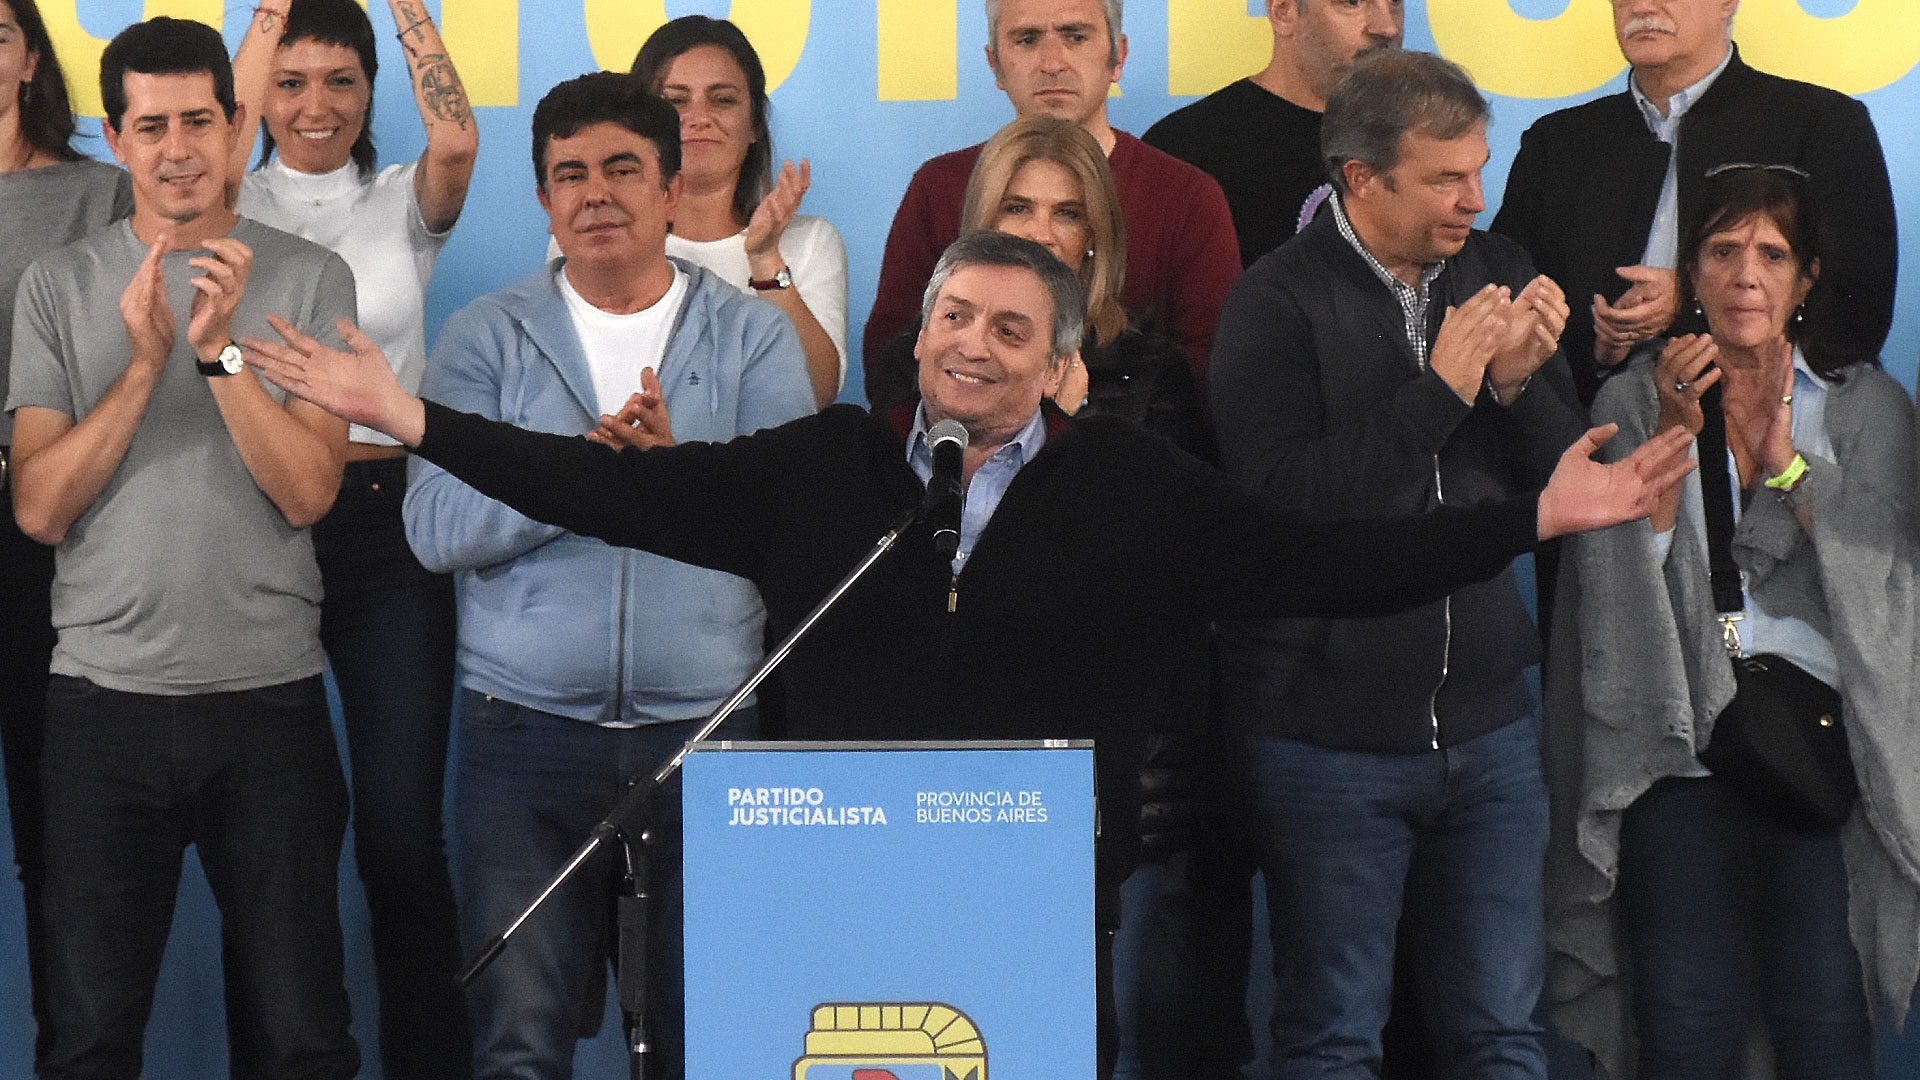 Máximo Kirchner convocará a elecciones en el PJ bonaerense y pondrá en juego su poder de representatividad